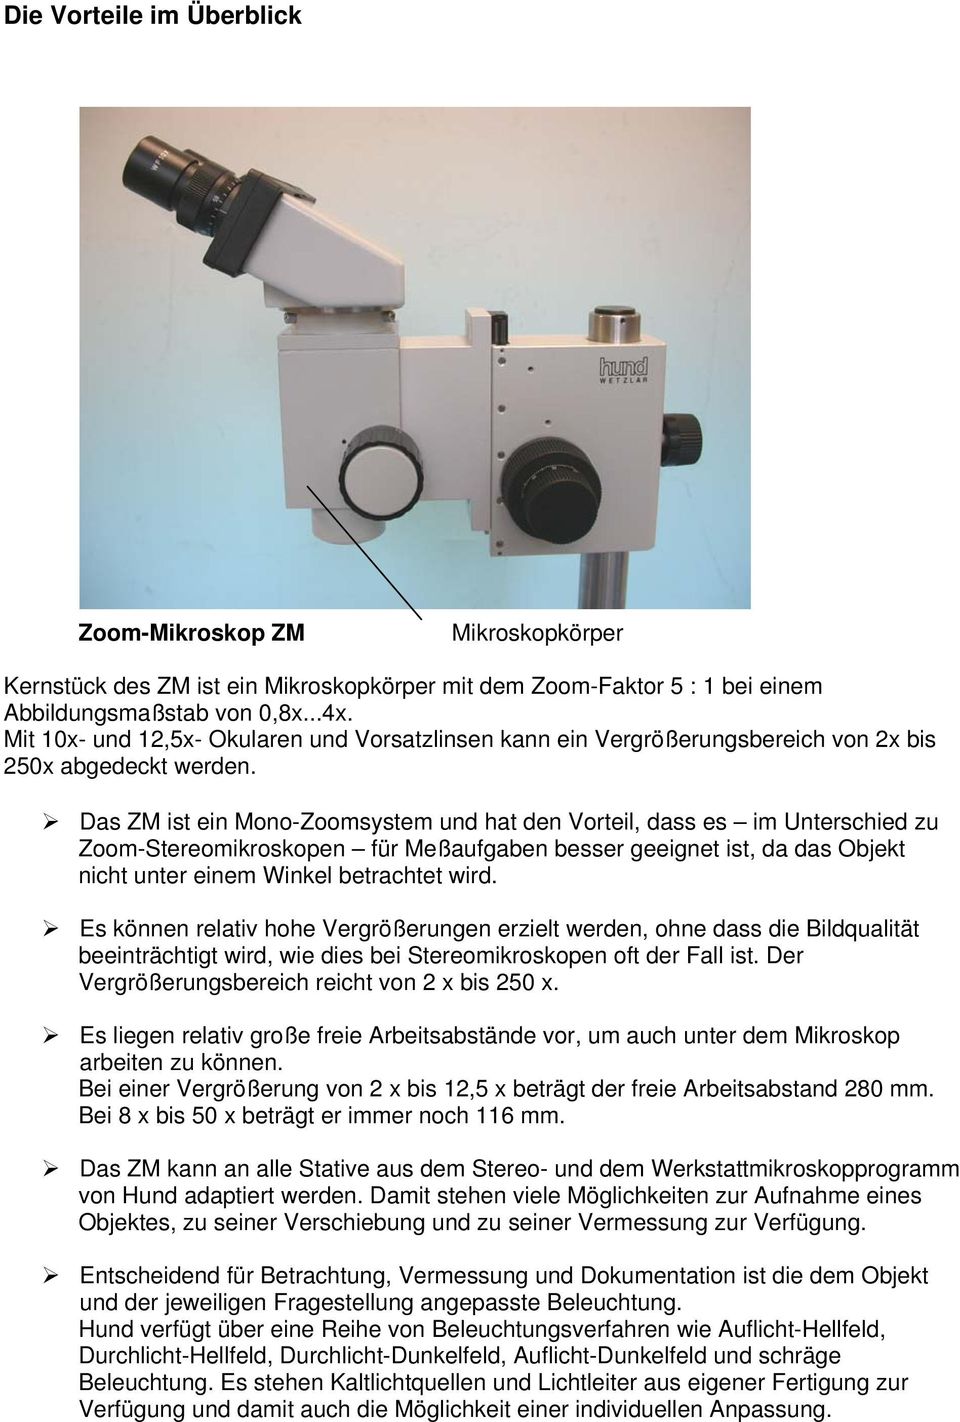 Das ZM ist ein Mono-Zoomsystem und hat den Vorteil, dass es im Unterschied zu Zoom-Stereomikroskopen für Meßaufgaben besser geeignet ist, da das Objekt nicht unter einem Winkel betrachtet wird.